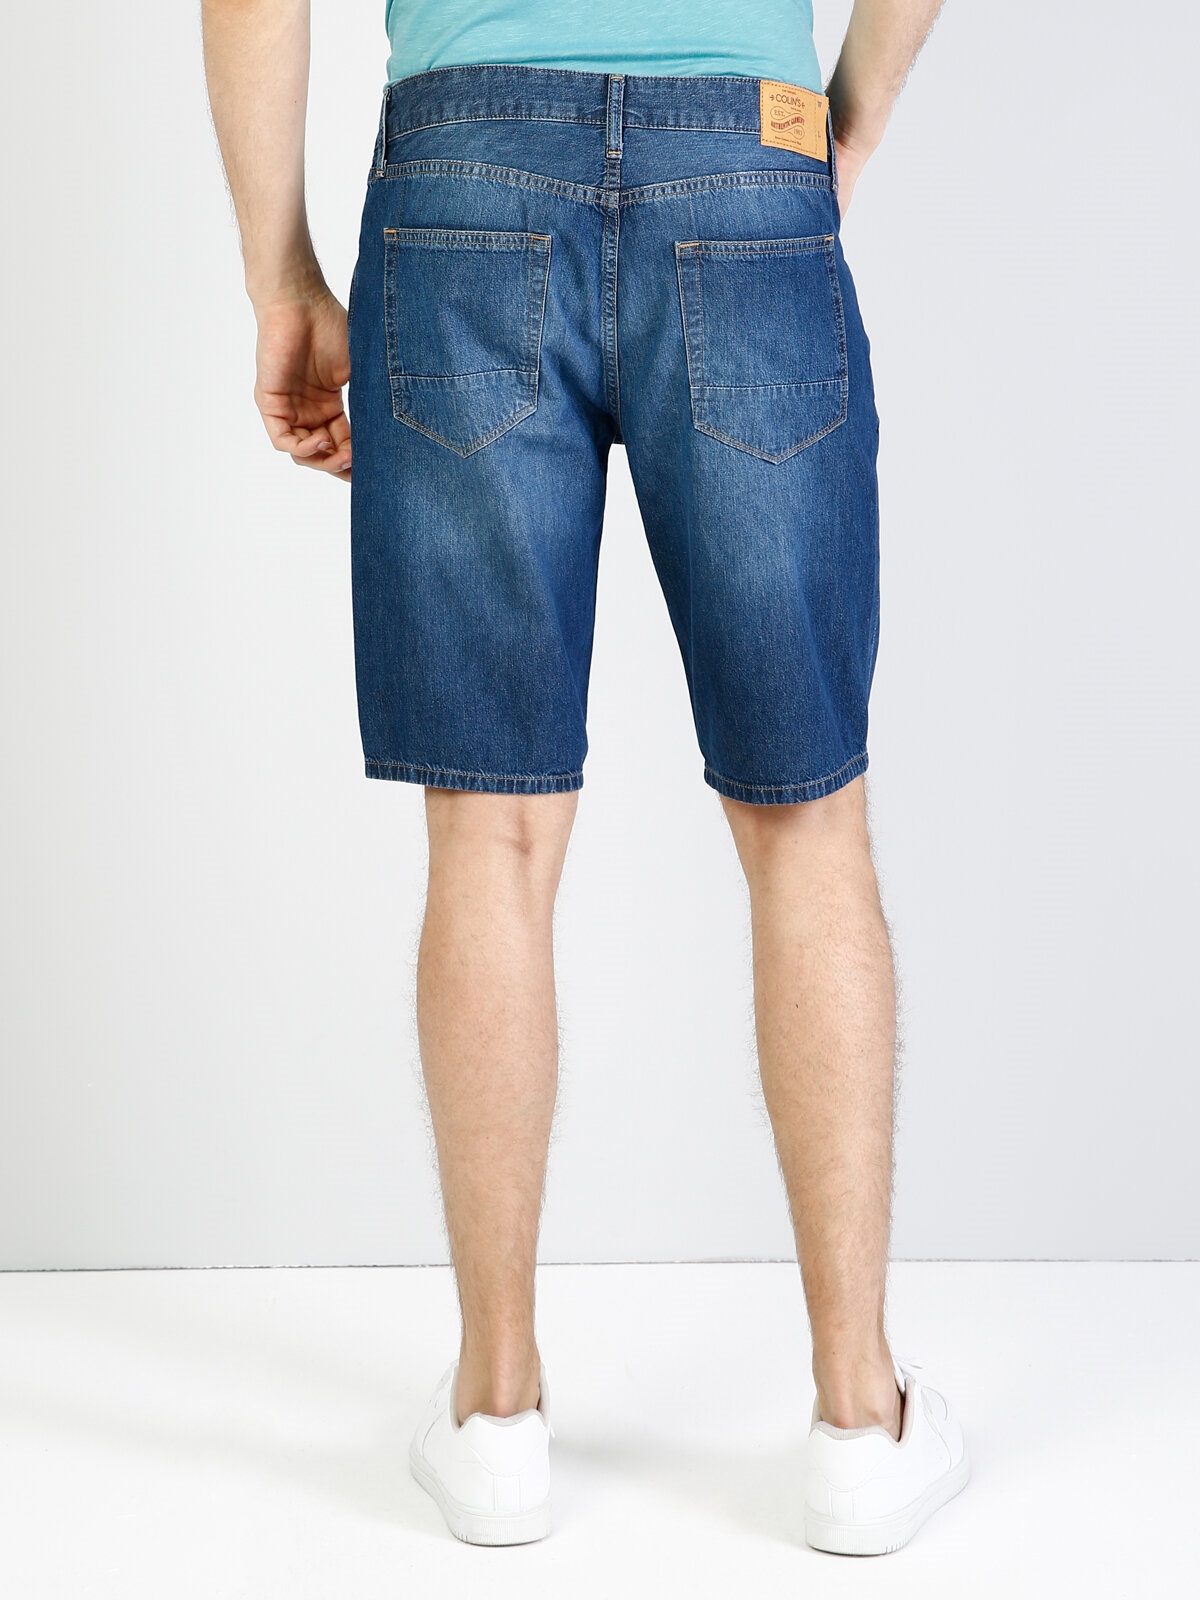 Afișați detalii pentru Albastru Barbati Short / Pantaloni Scurti Regular Fit